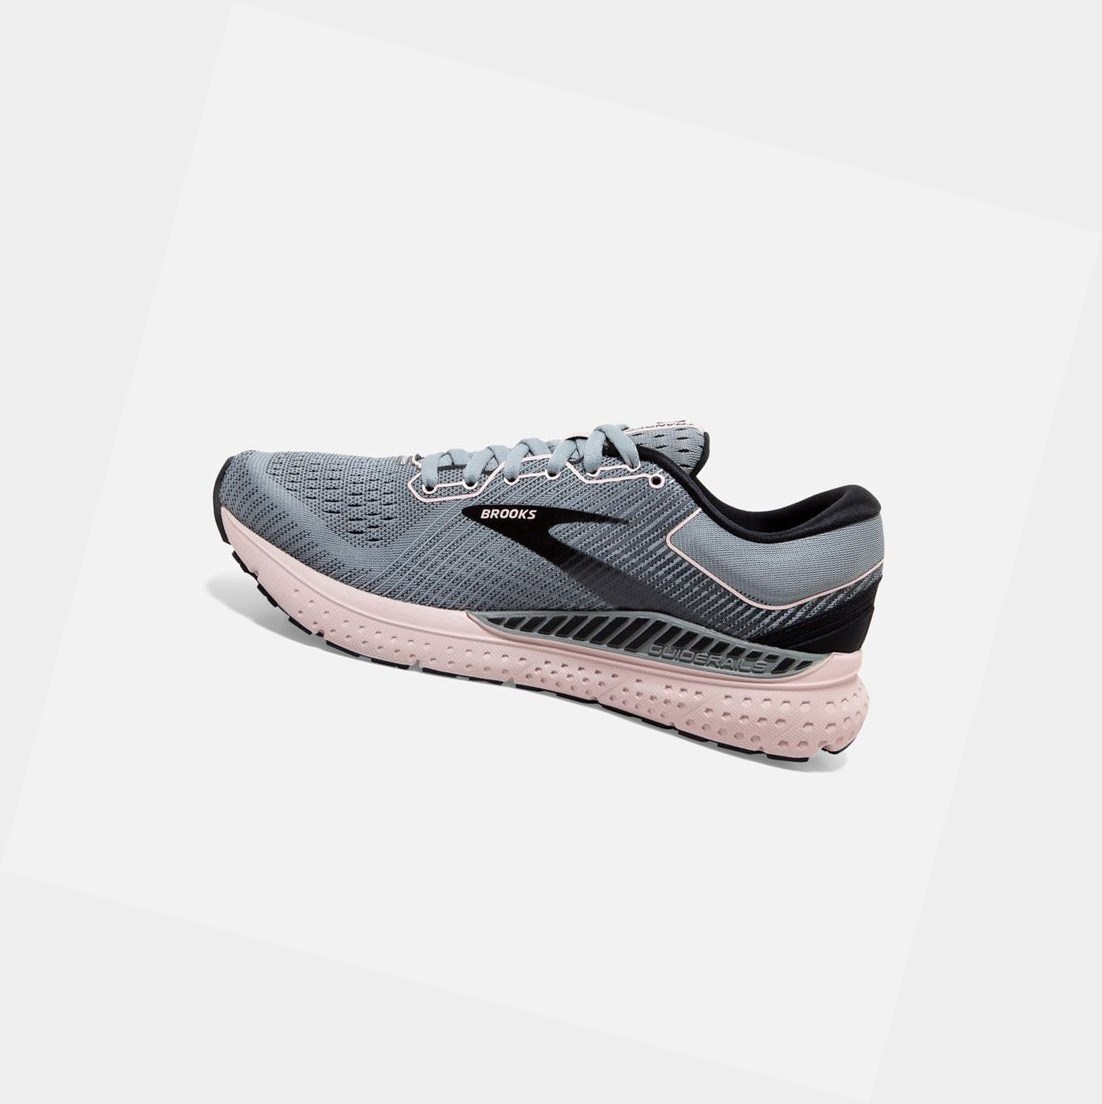 Brooks Transcend 7 Women's Road Running Shoes Grey / Black / Hushed Violet | HKSN-34586